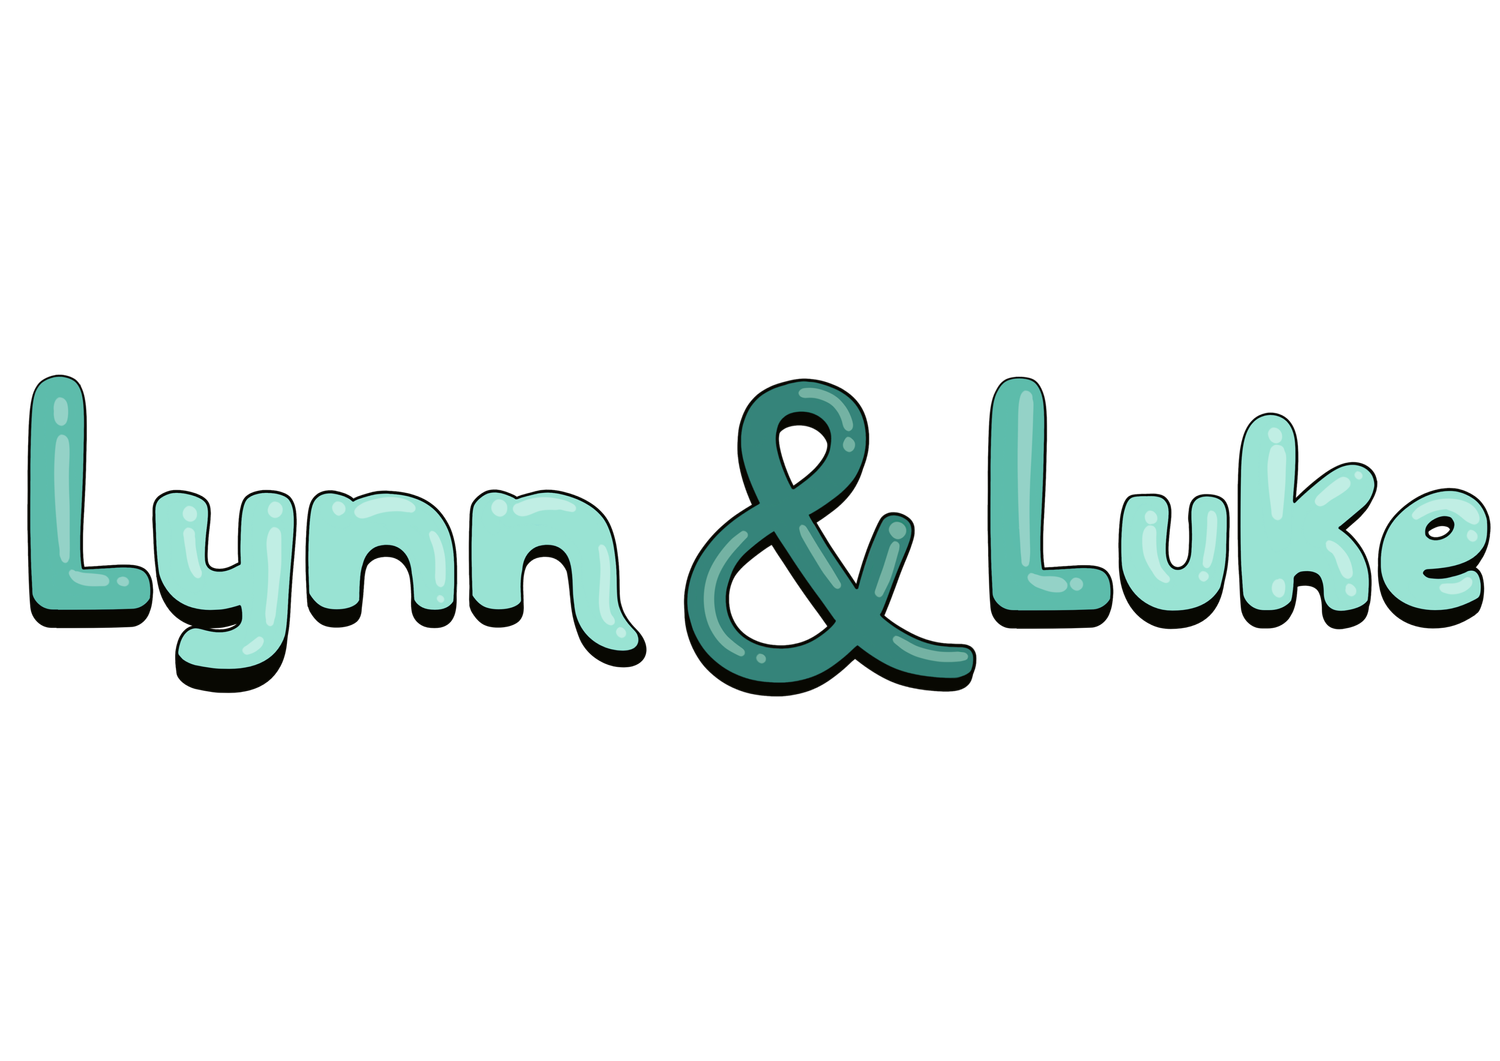 Lynn and Luke CLIL Unterrichtsmaterial für den immersiven Fremdsprachenunterricht kaufen